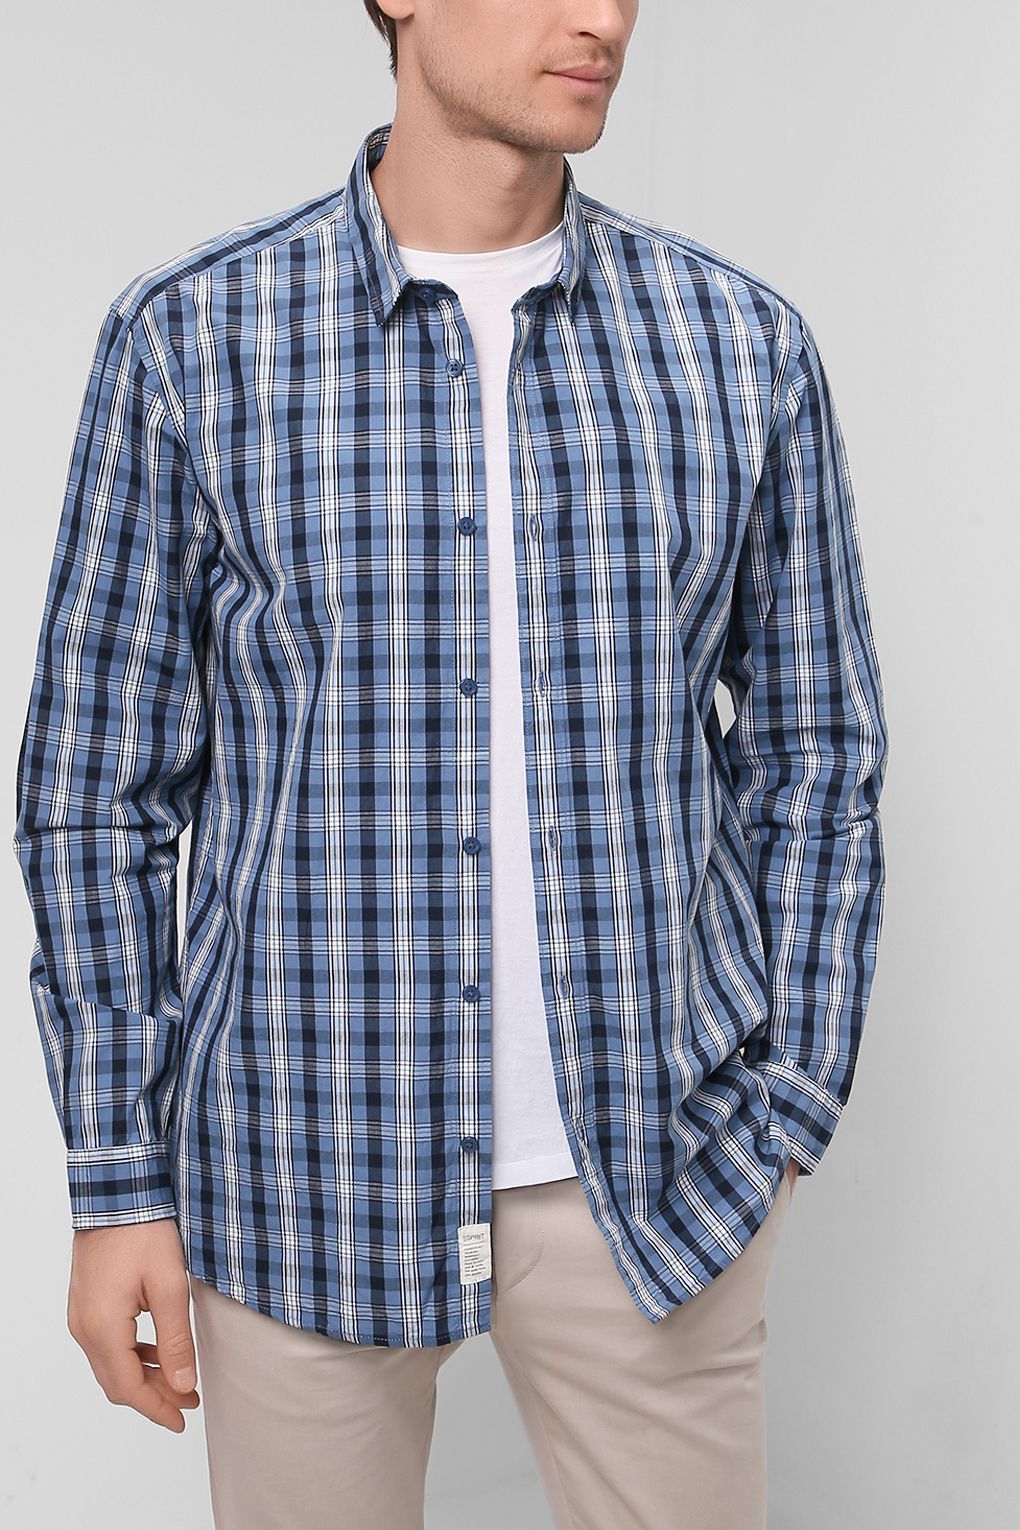 Рубашка мужская Esprit 022EE2F305 синяя S